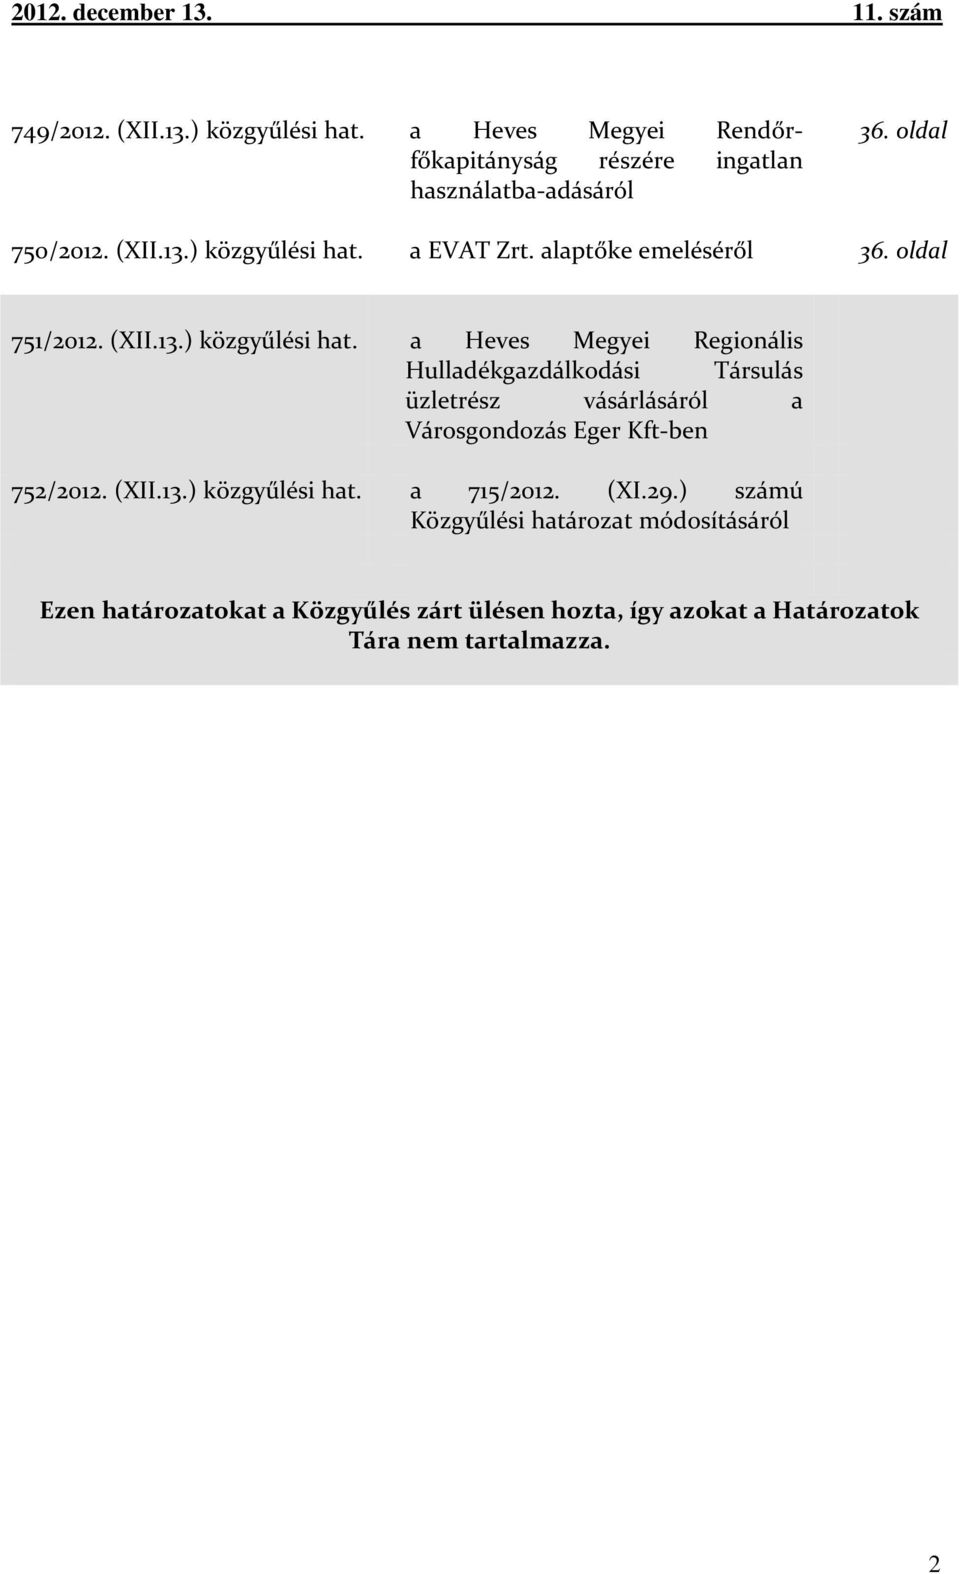 a Heves Megyei Regionális Hulladékgazdálkodási Társulás üzletrész vásárlásáról a Városgondozás Eger Kft-ben 752/2012. (XII.13.